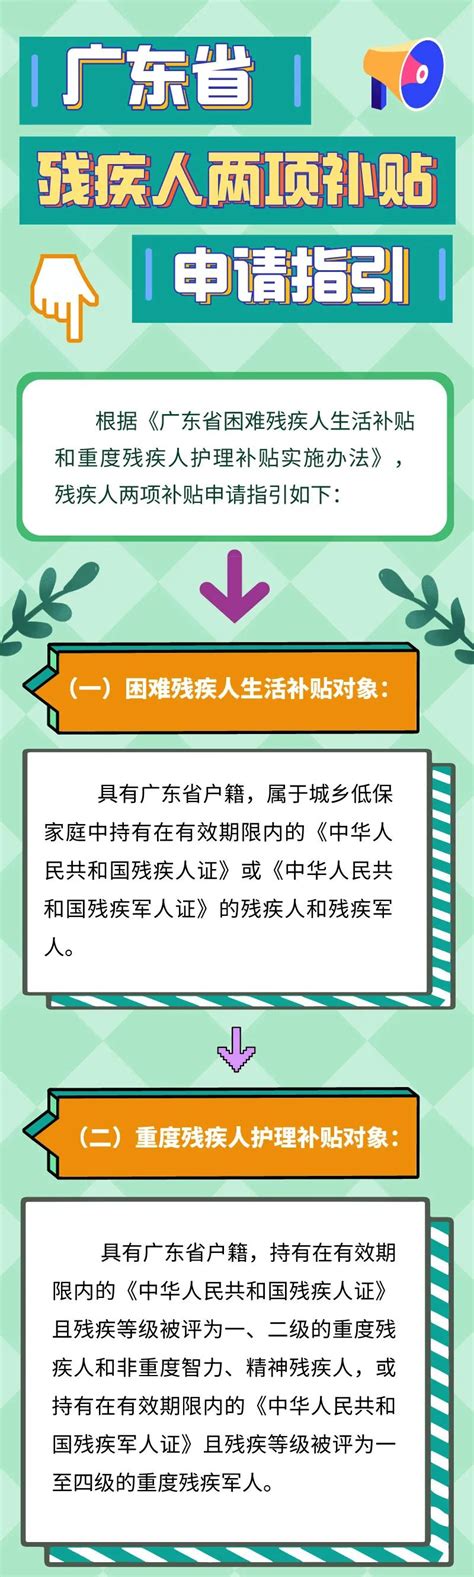 广东省残疾人两项补贴申领指引和资格认定操作指引